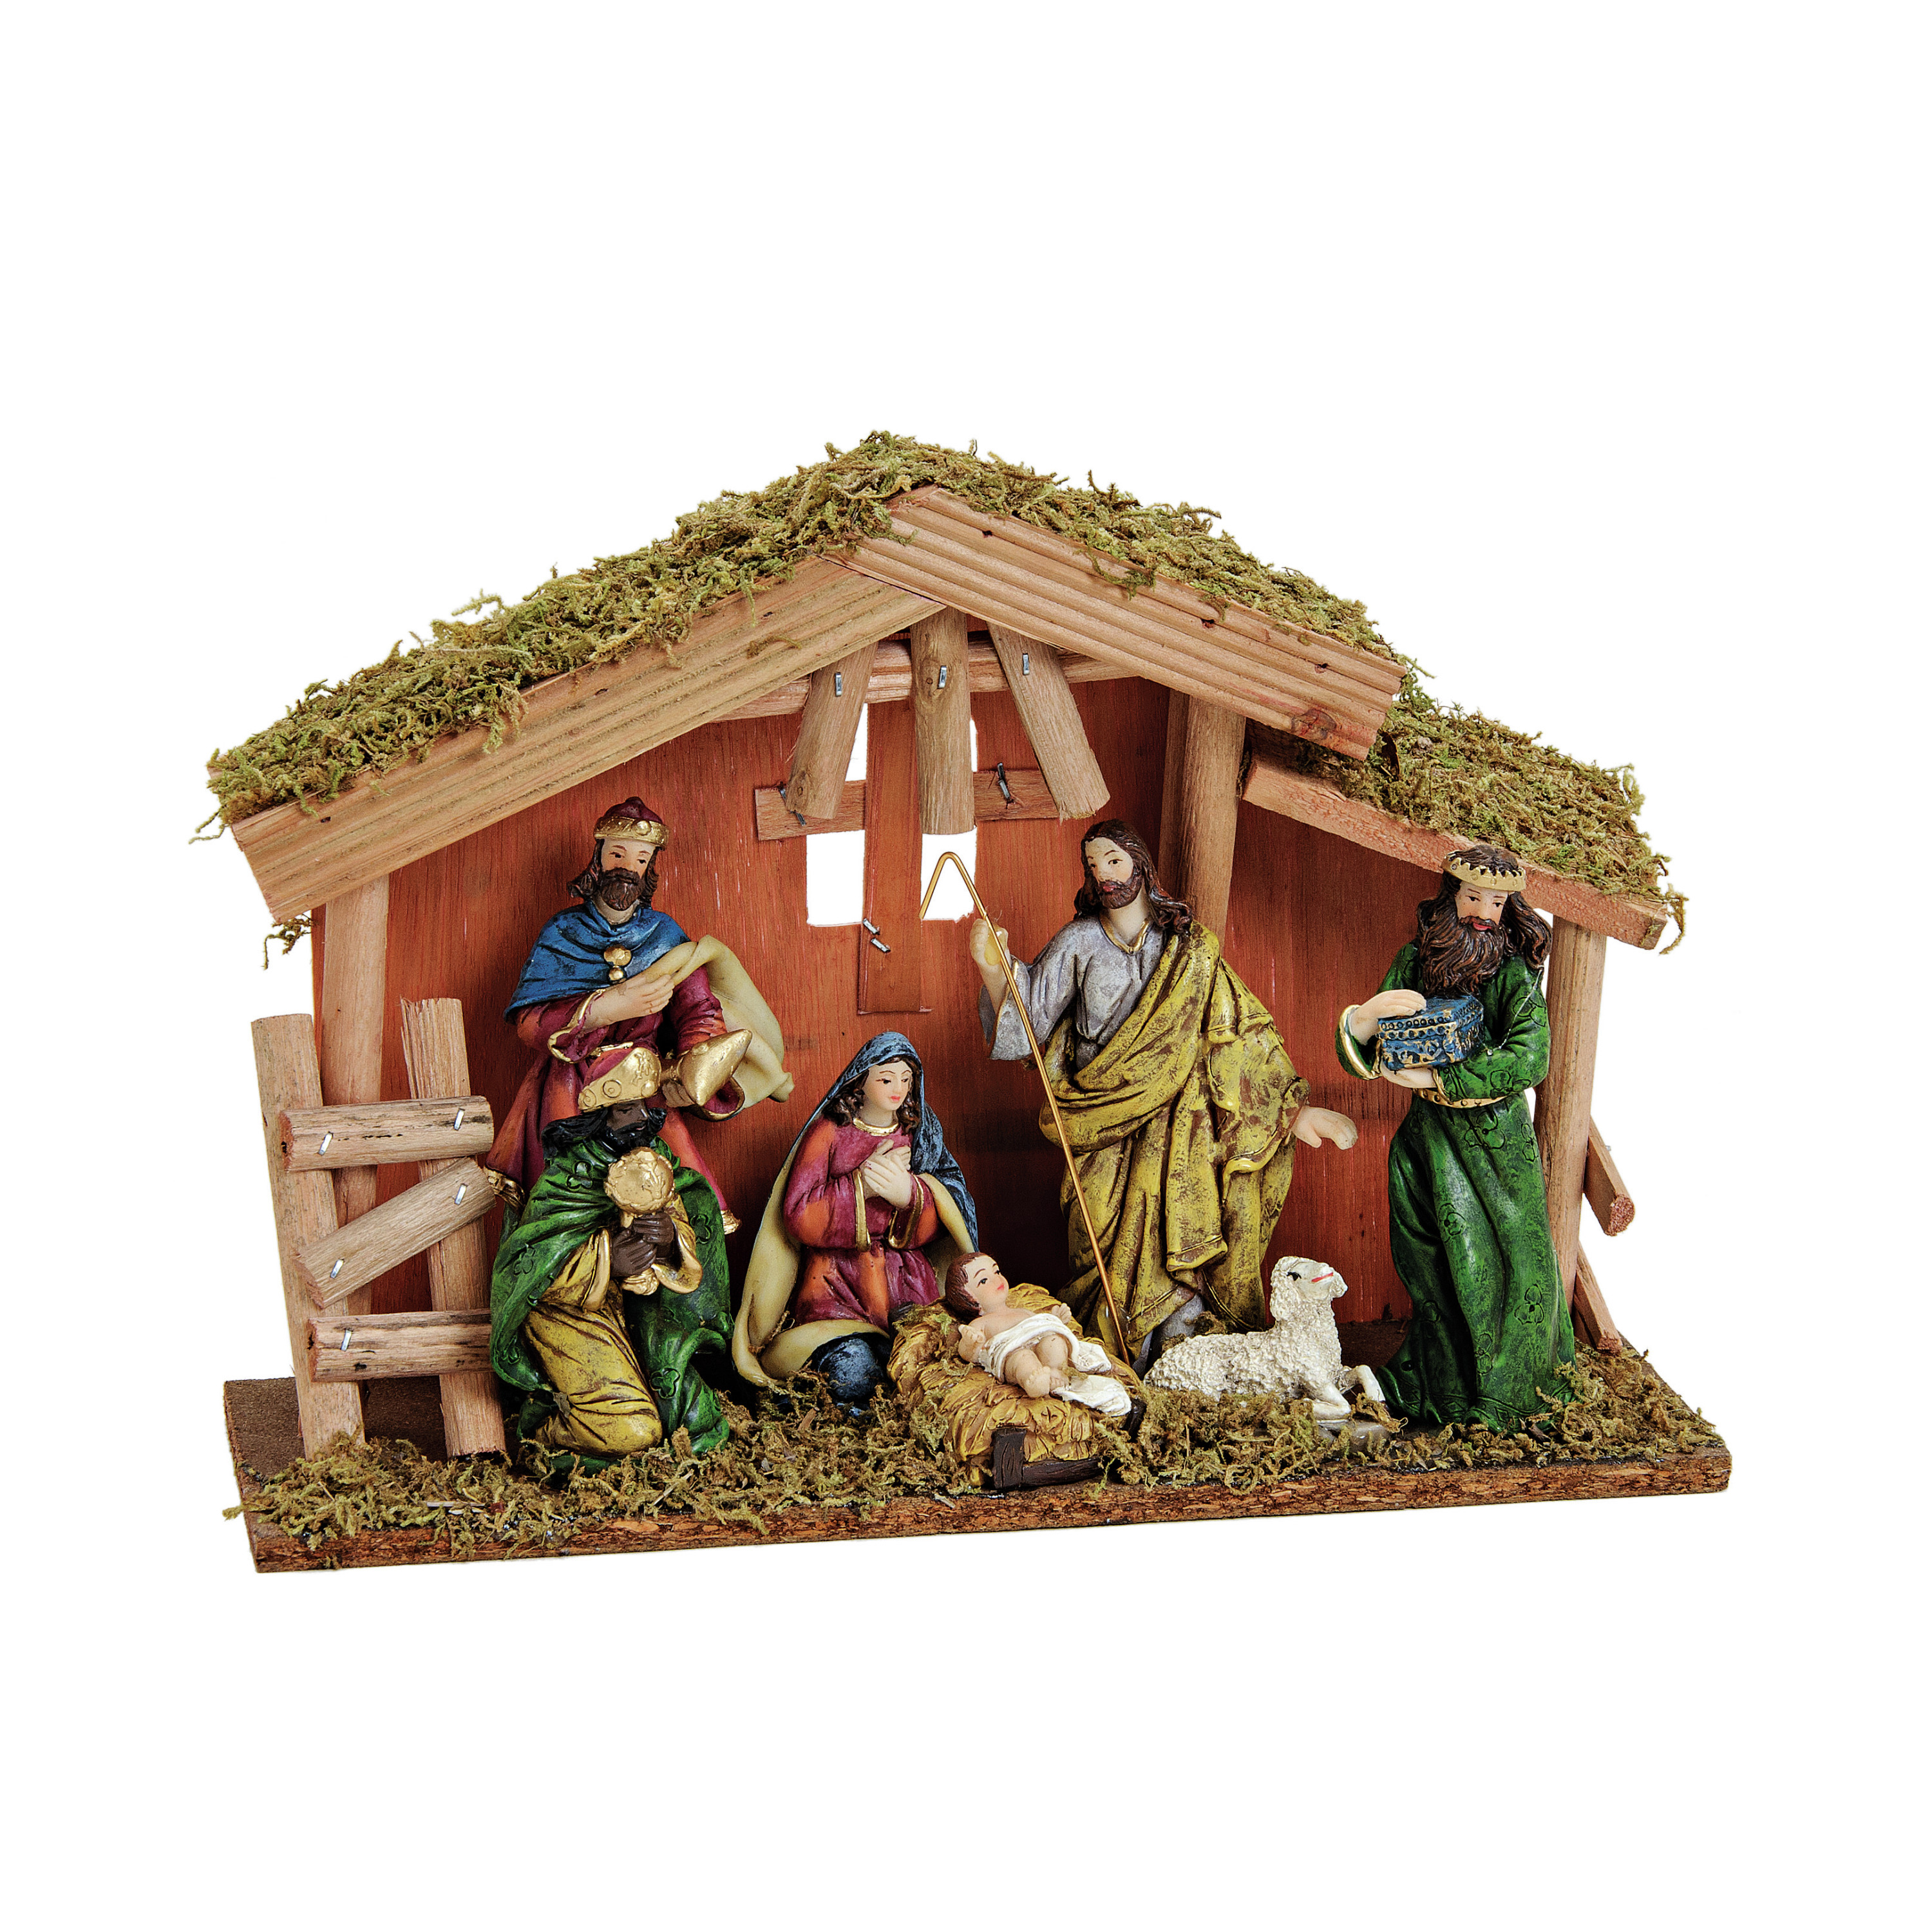 Complete kerststal inclusief kerstbeelden 30 x 21 x 10 cm hout